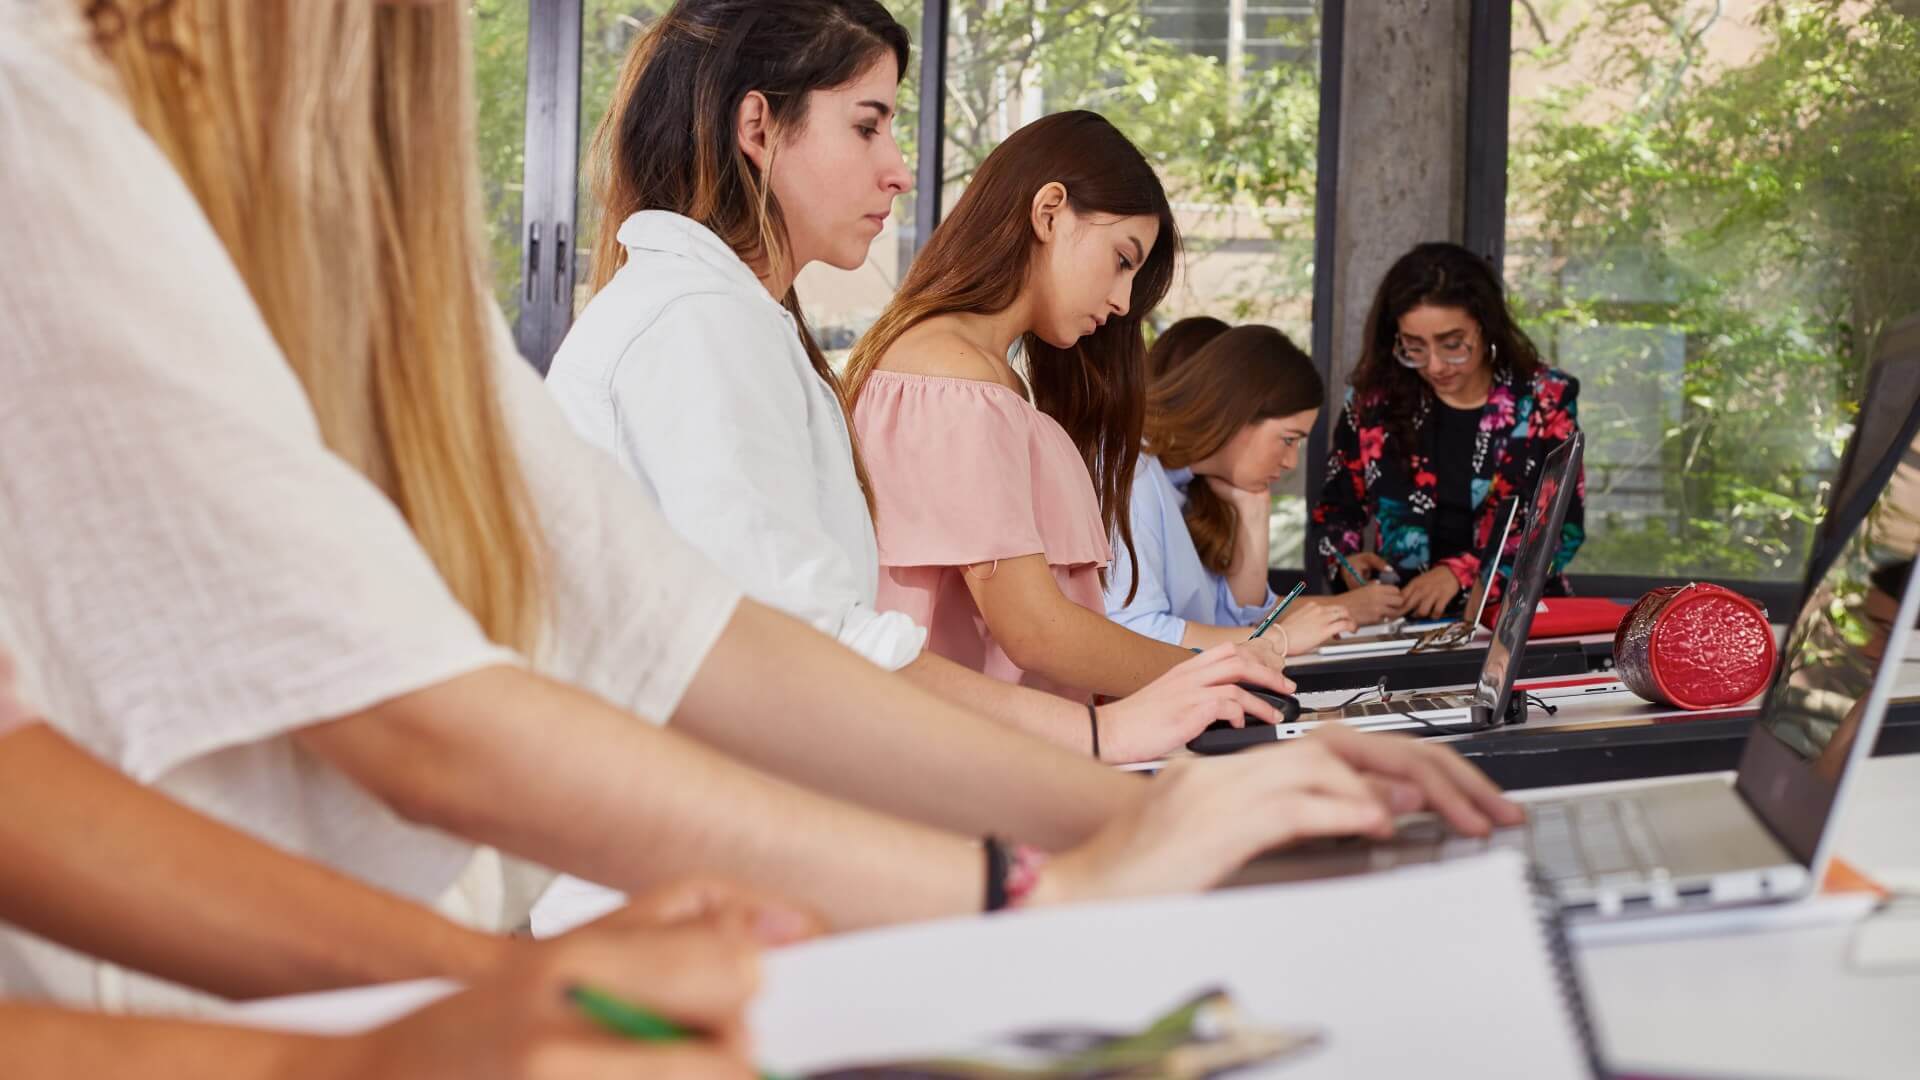 Un grupo de estudiantes femeninas enfocadas trabajando colaborativamente en sus tareas en un aula bien iluminada, representando el trabajo en equipo y la dedicación.